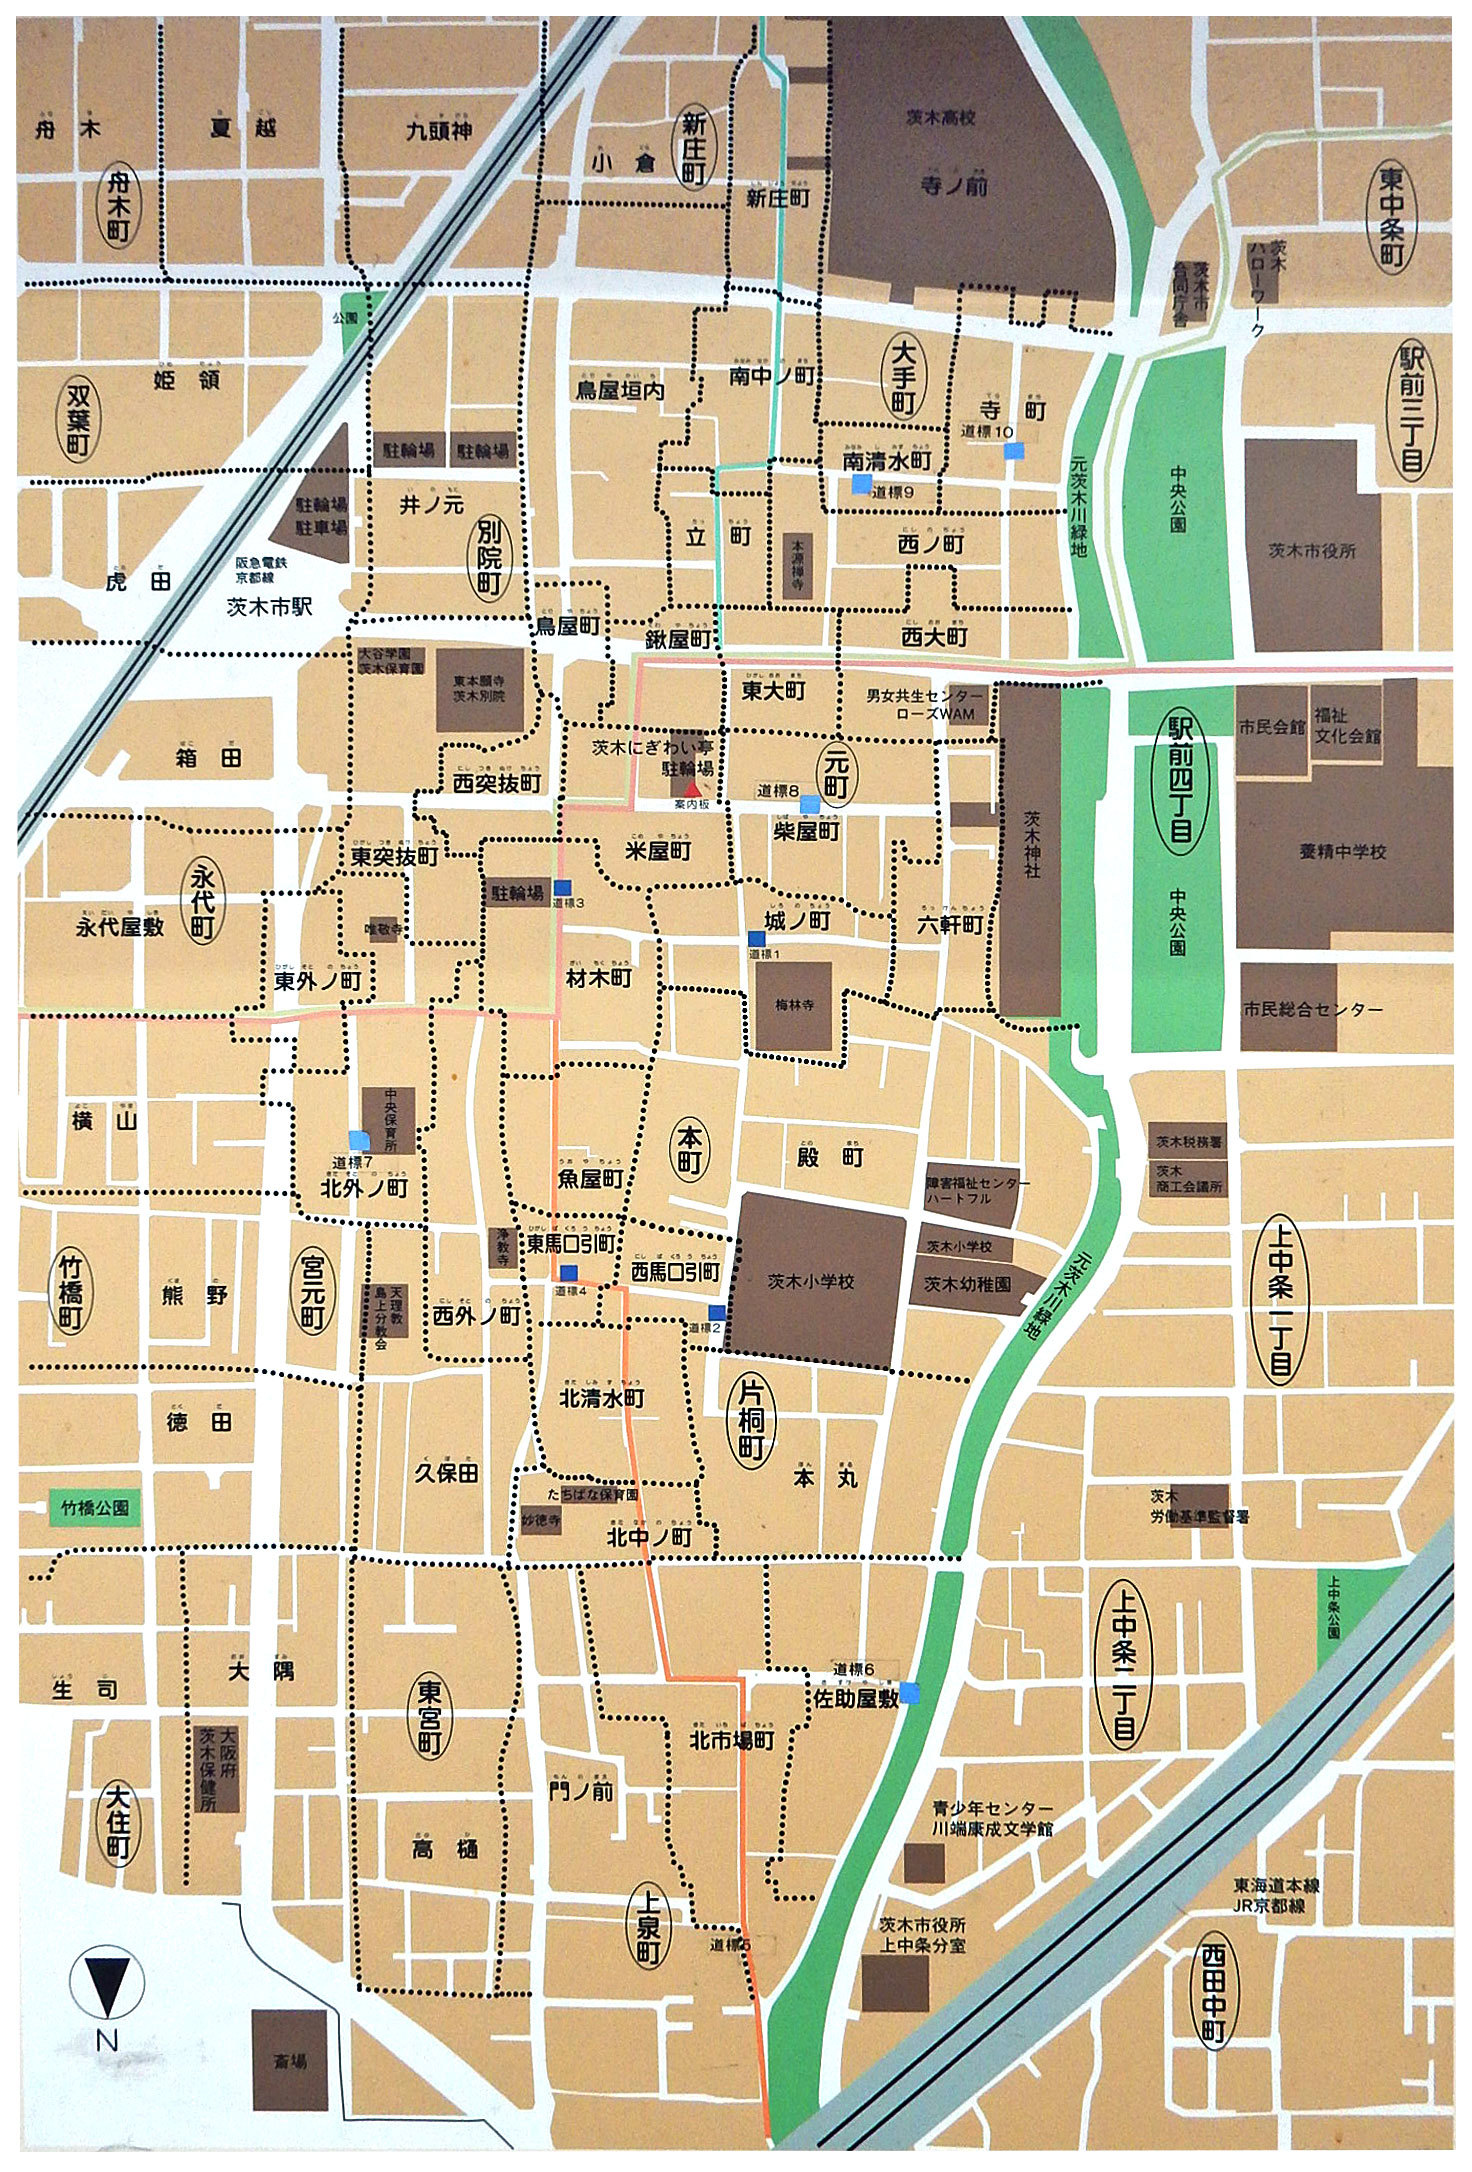 茨木周辺地籍図